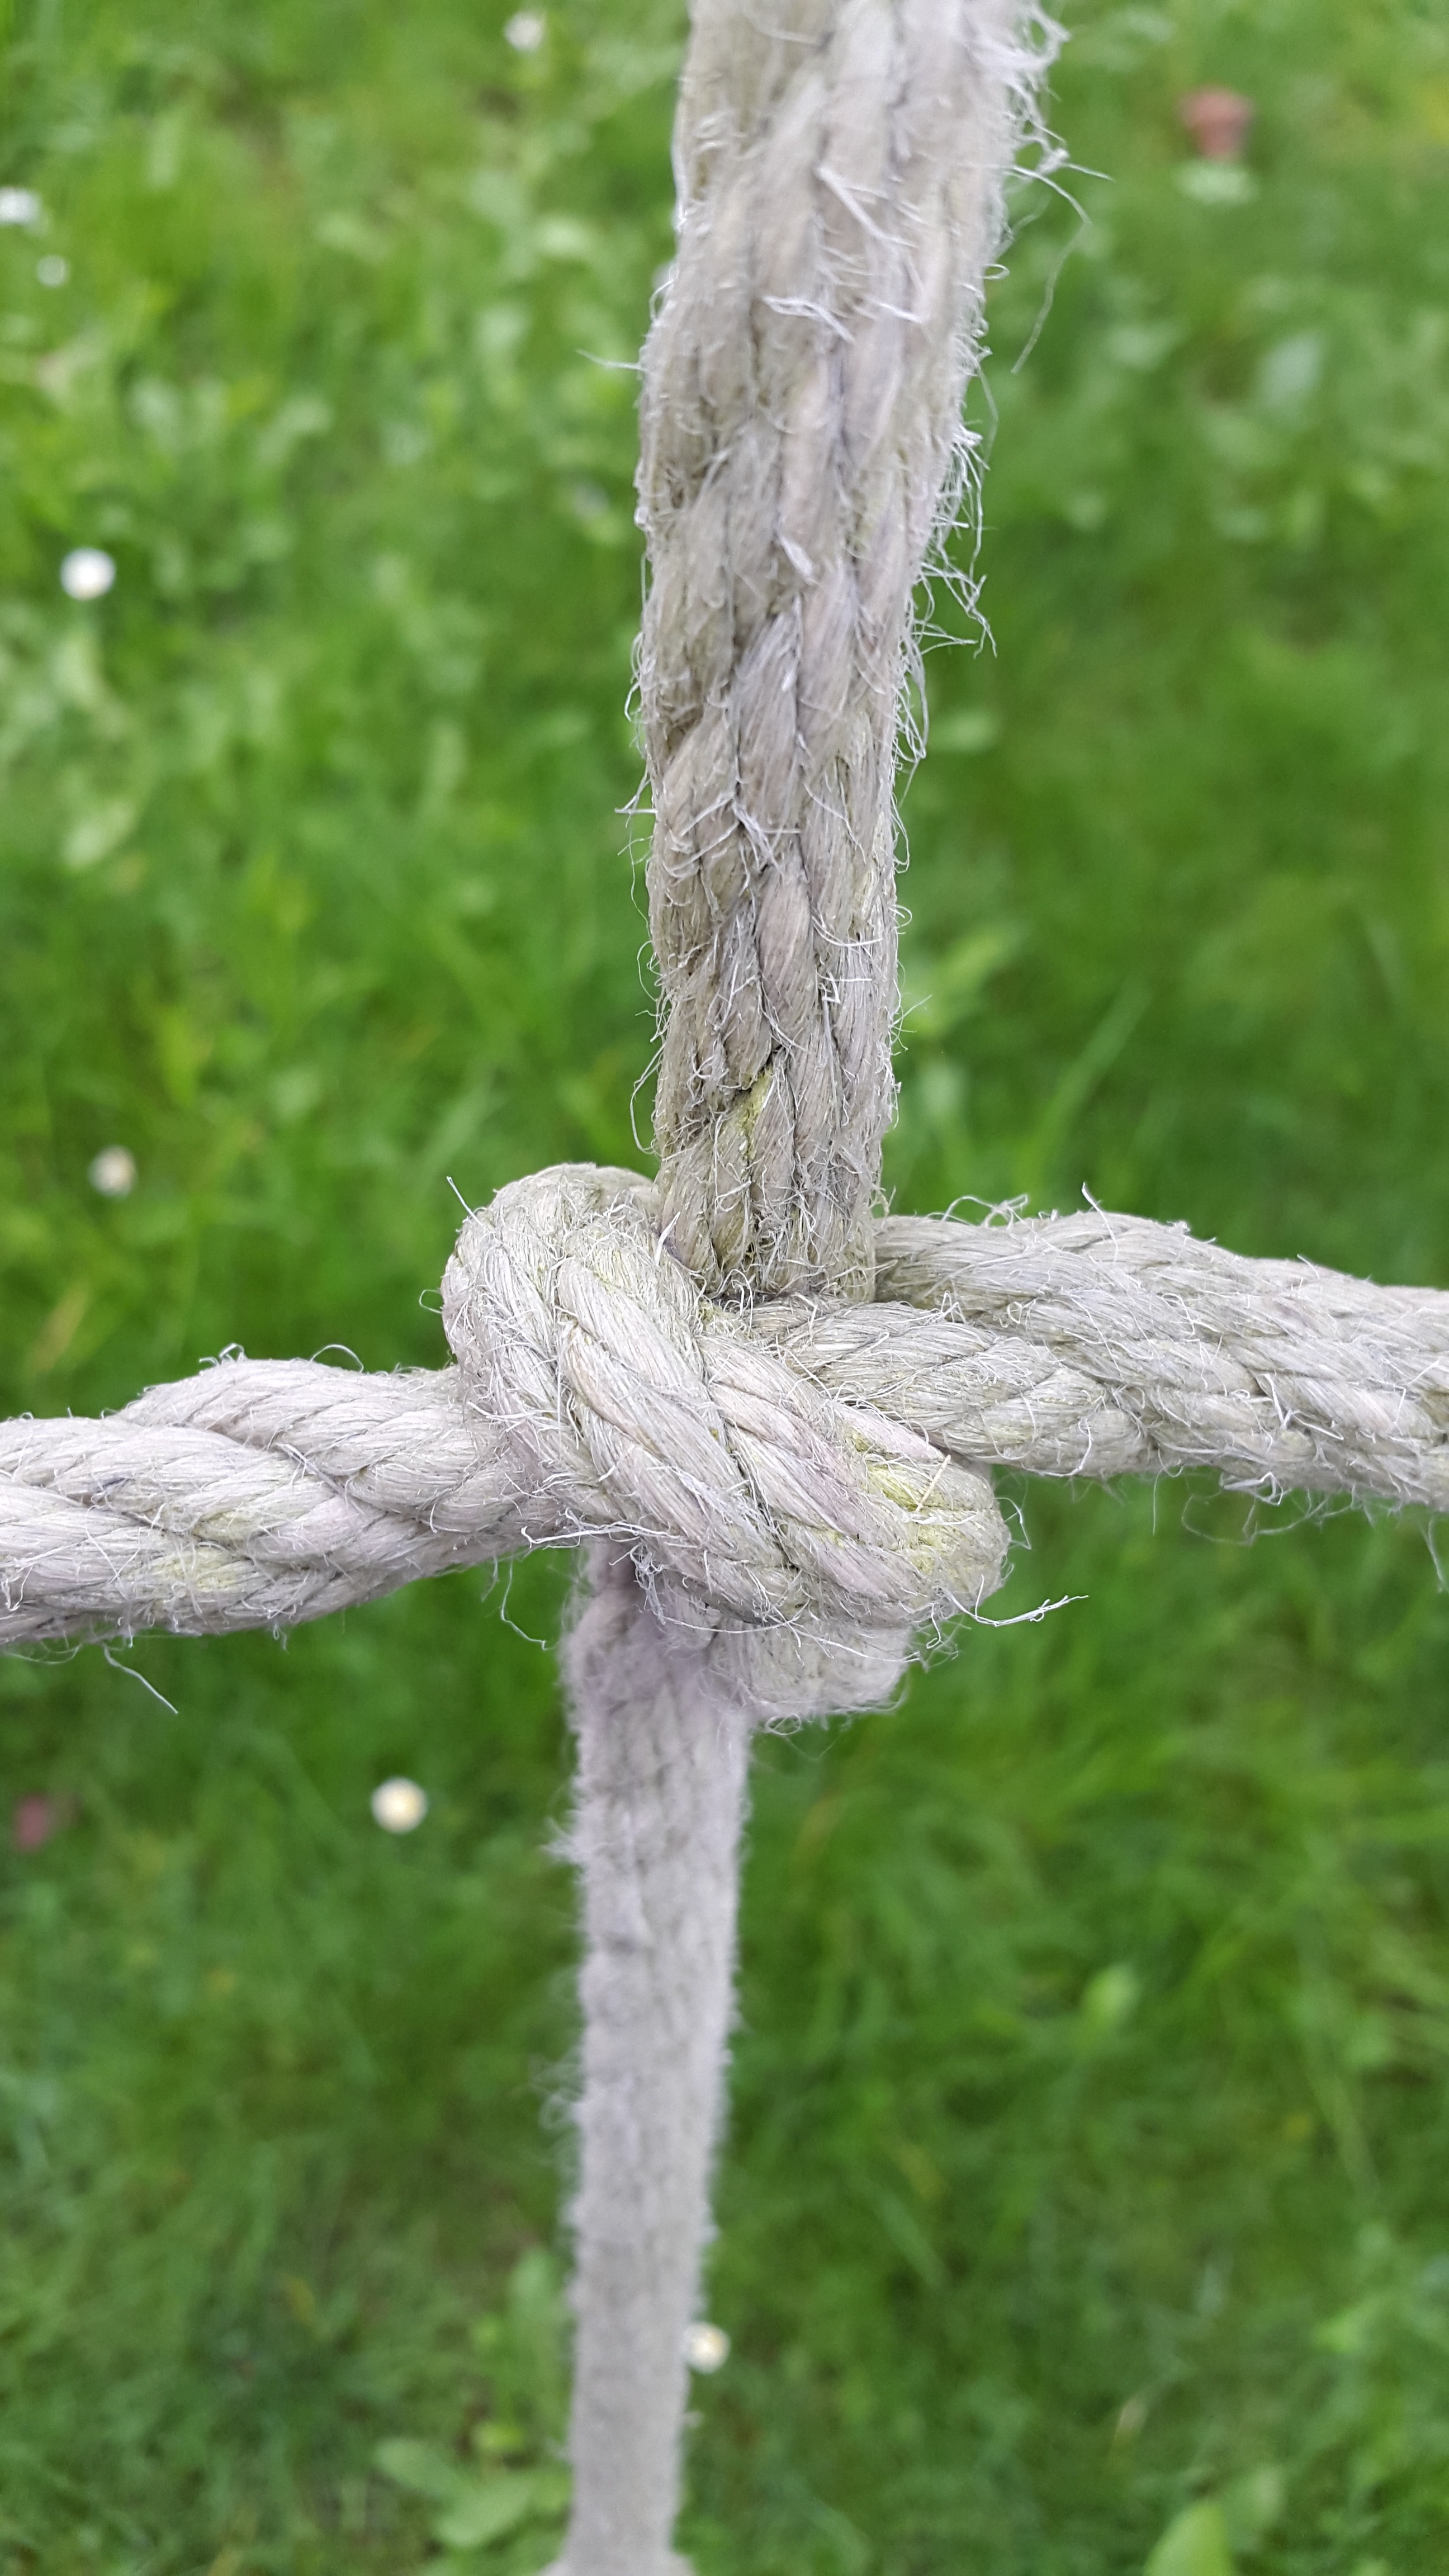 gray rope